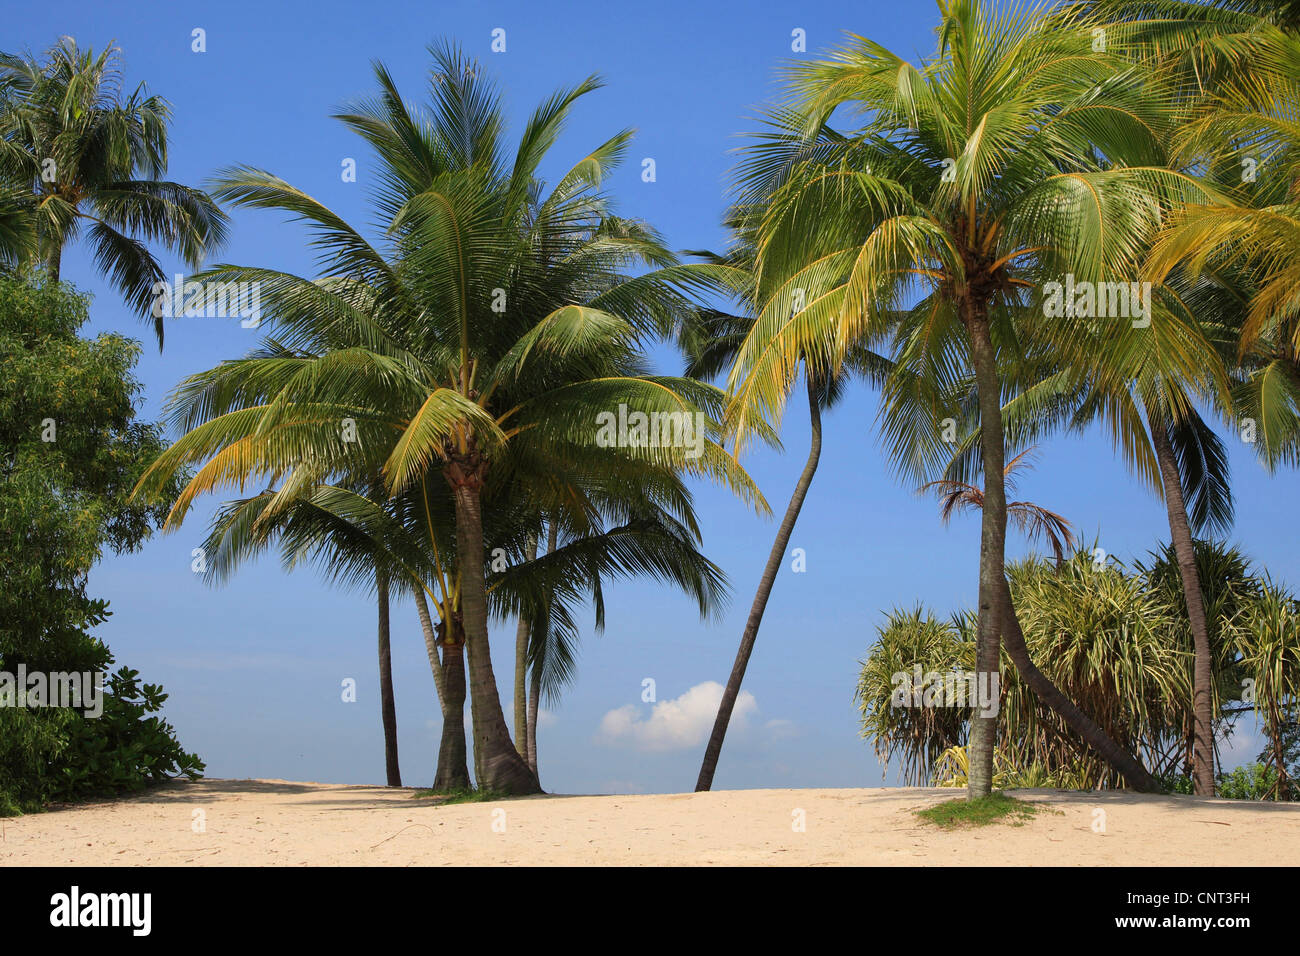 Palma de coco (Cocos nucifera), palmeras en la playa, Singapur Foto de stock